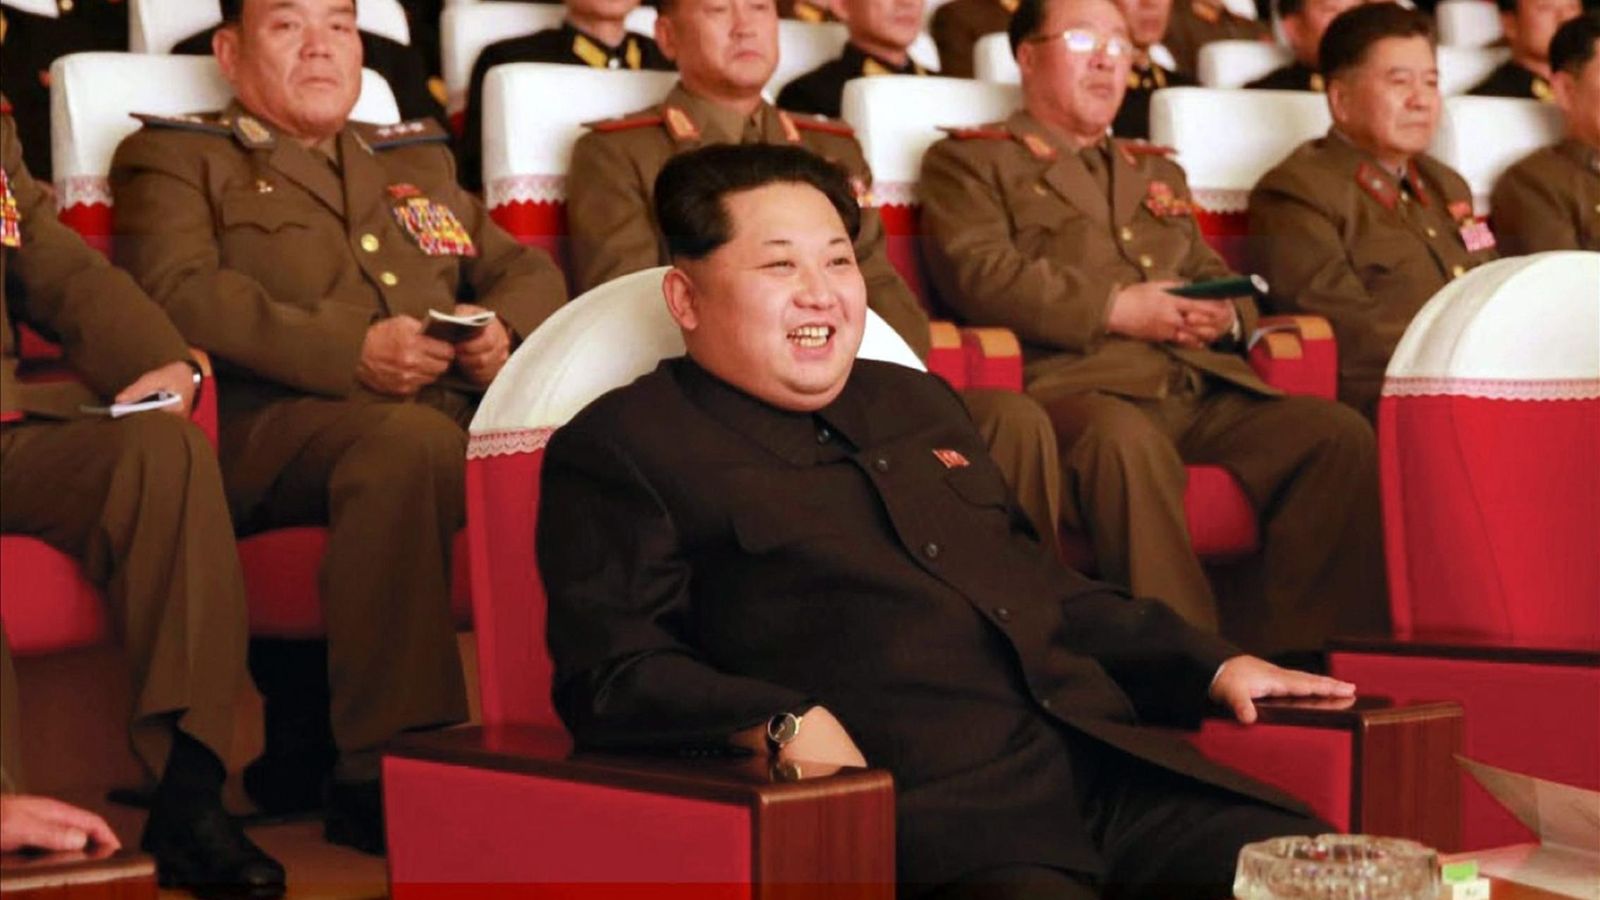 Foto: El líder norcoreano Kim Jong-un observa una presentación de soldados en un festival de arte en Pyongyang. (Efe)